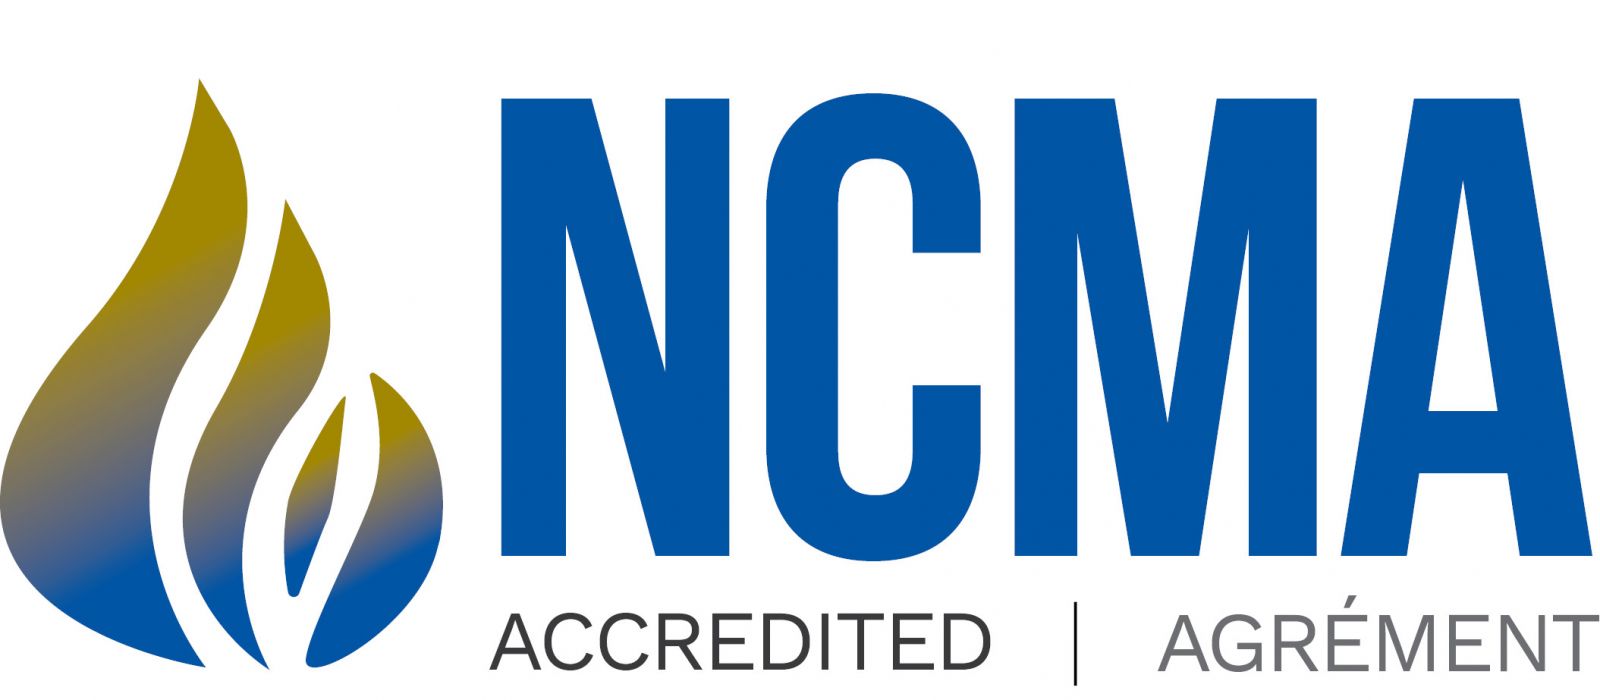 NCMA logo